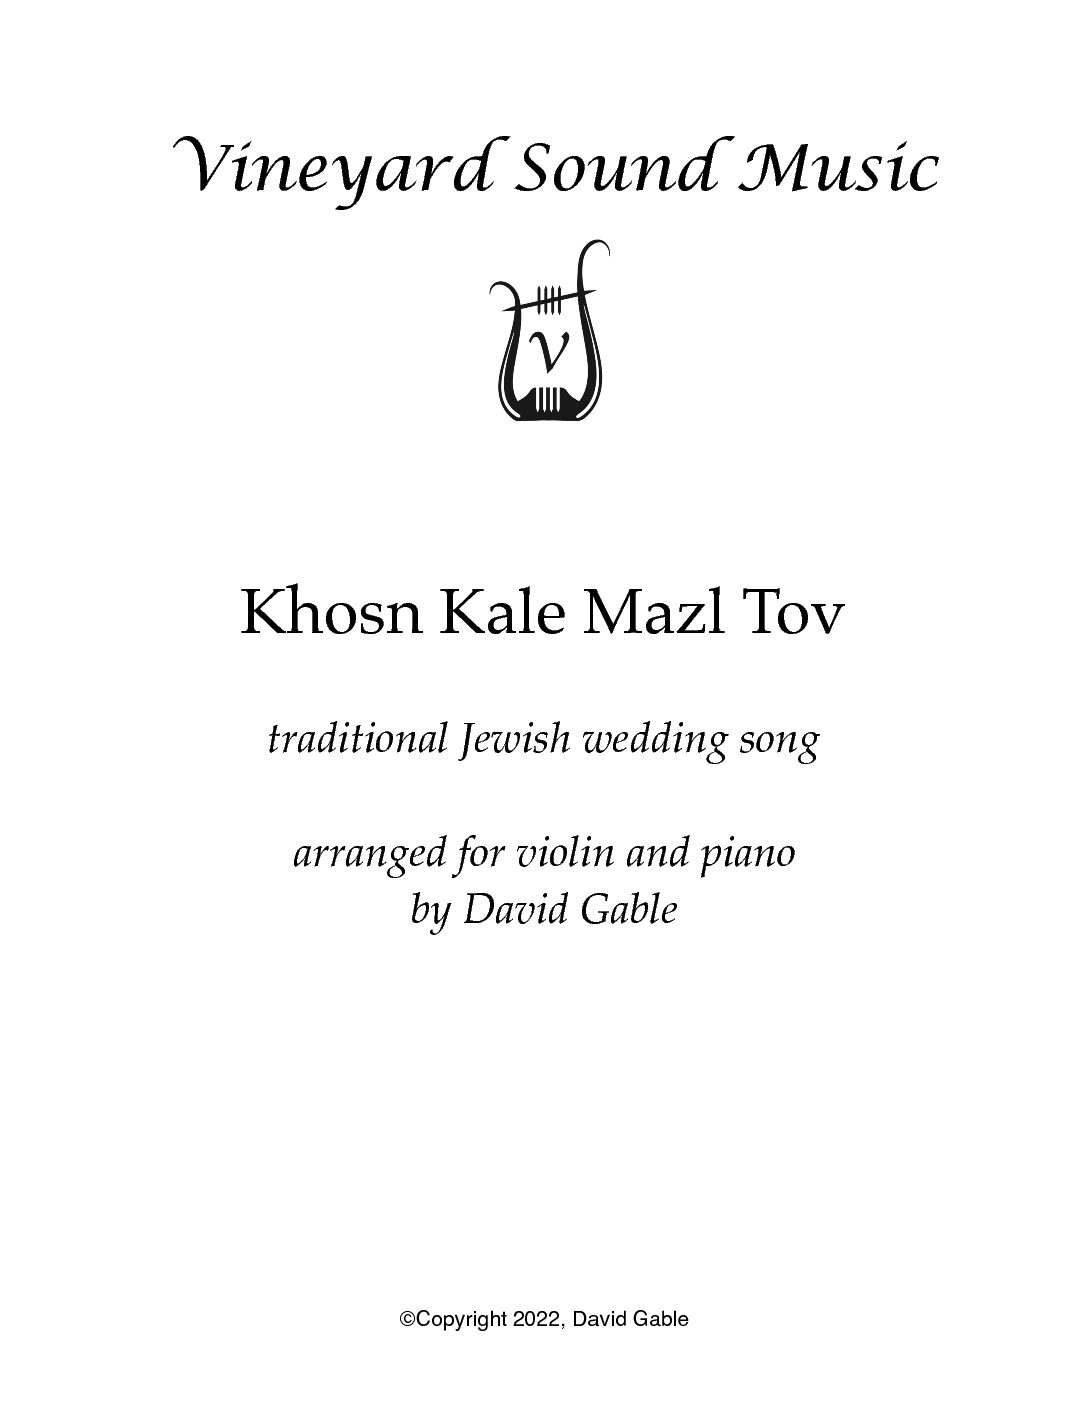 Hevenu Shalom Aleichem for four violins Sheet music for Violin (Mixed  Quartet)